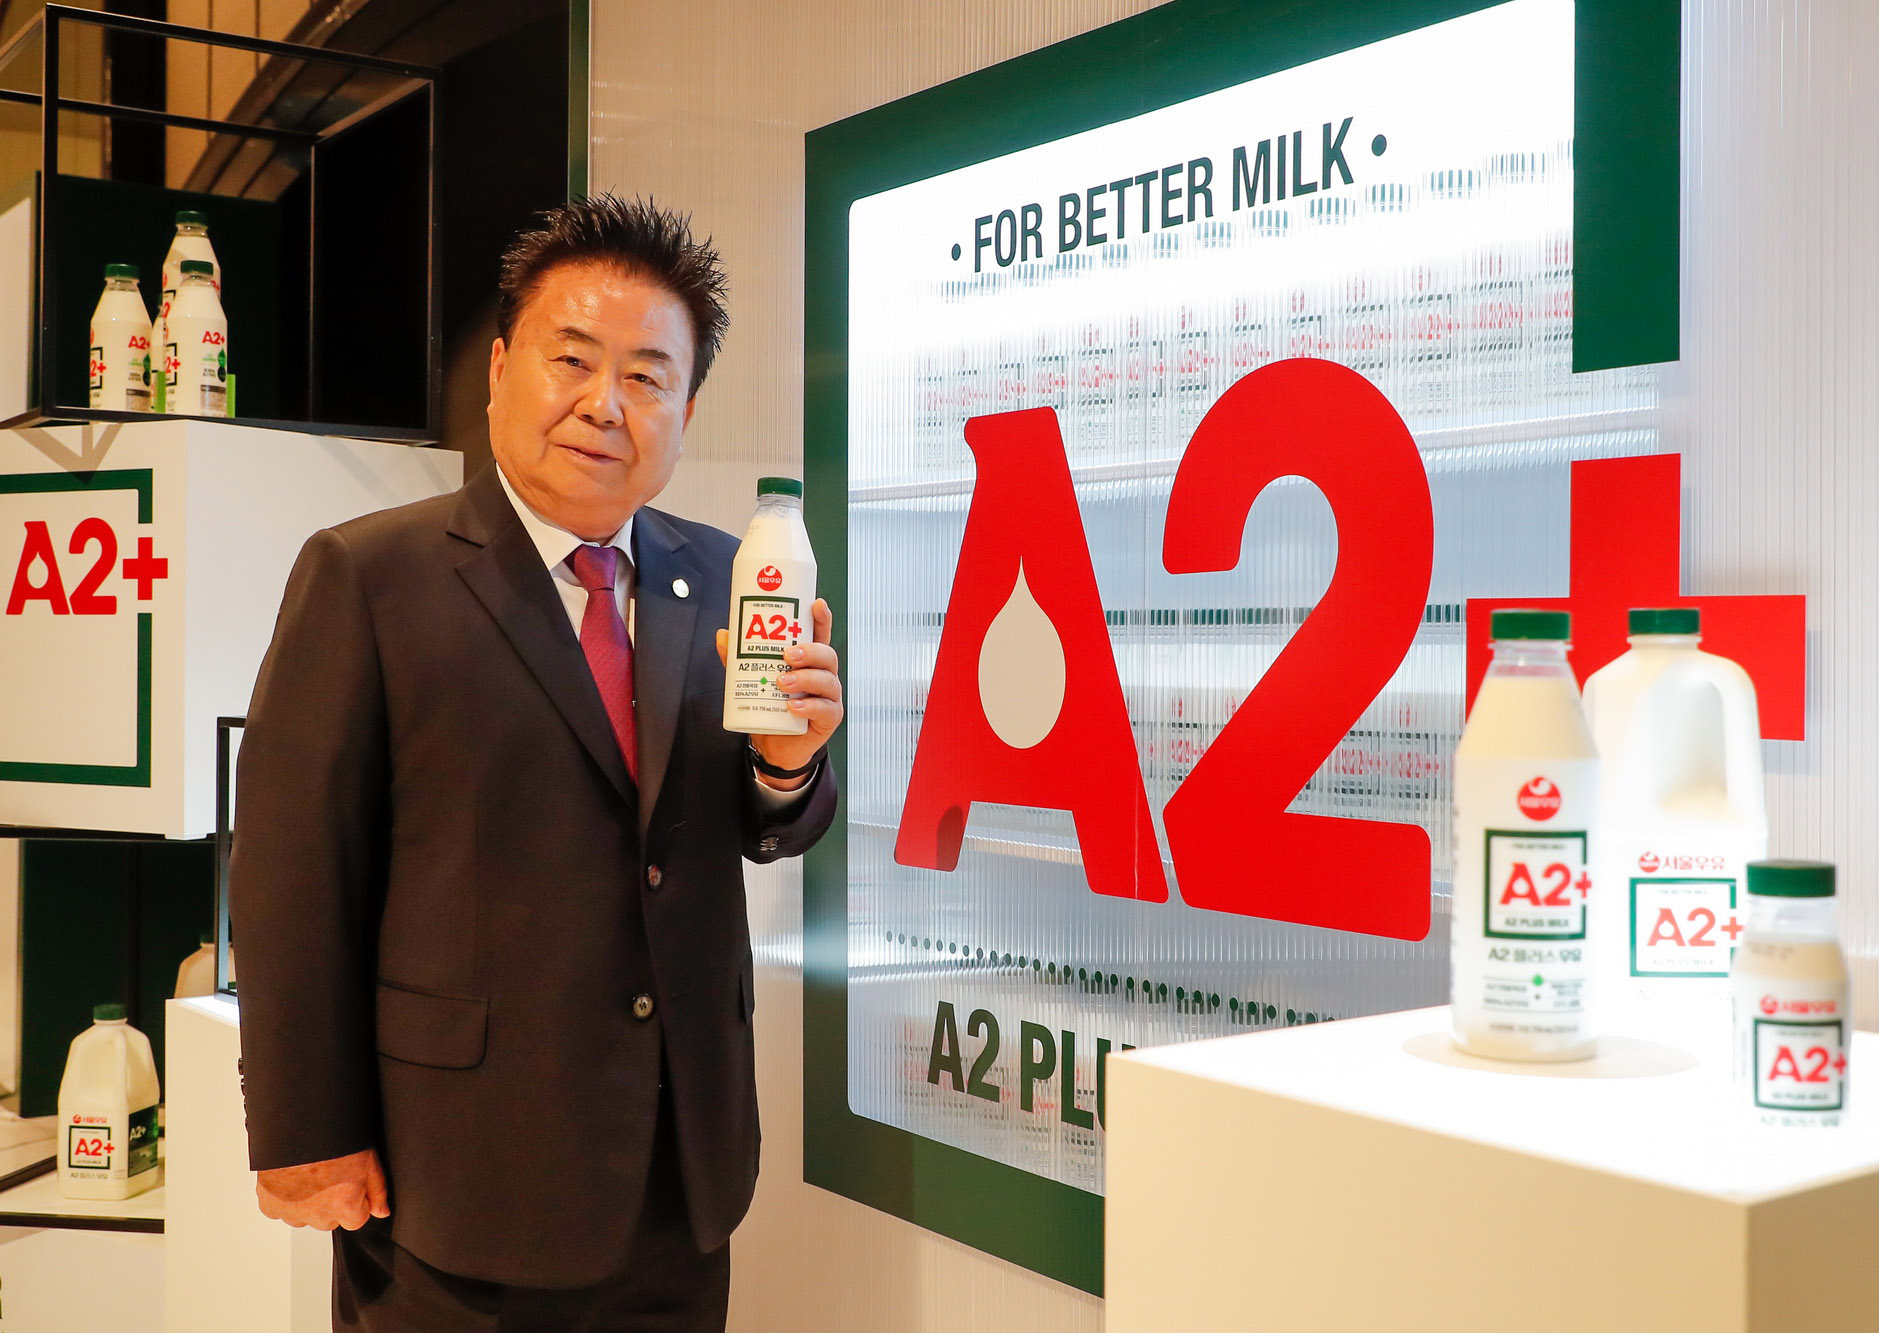 15일 서울 용산구 그랜드 하얏트 서울에서 열린 ‘A2+(플러스)’ 우유 출시회에서 서울우유 문진섭 조합장이 새롭게 출시되는 서울우유 ‘A2+(플러스)’ 우유를 선보이고 있다. ‘A2+ 우유’는 A2 전용목장에서 분리∙집유한 100% 국산 A2 우유에 서울우유의 차별화된 핵심 가치인 체세포수 1등급, 세균수 1A 원유를 강조하는 한편 EFL(Extended Fresh Life)공법까지 플러스한 프리미엄 우유다. 2024. 4. 15 서울우유 제공